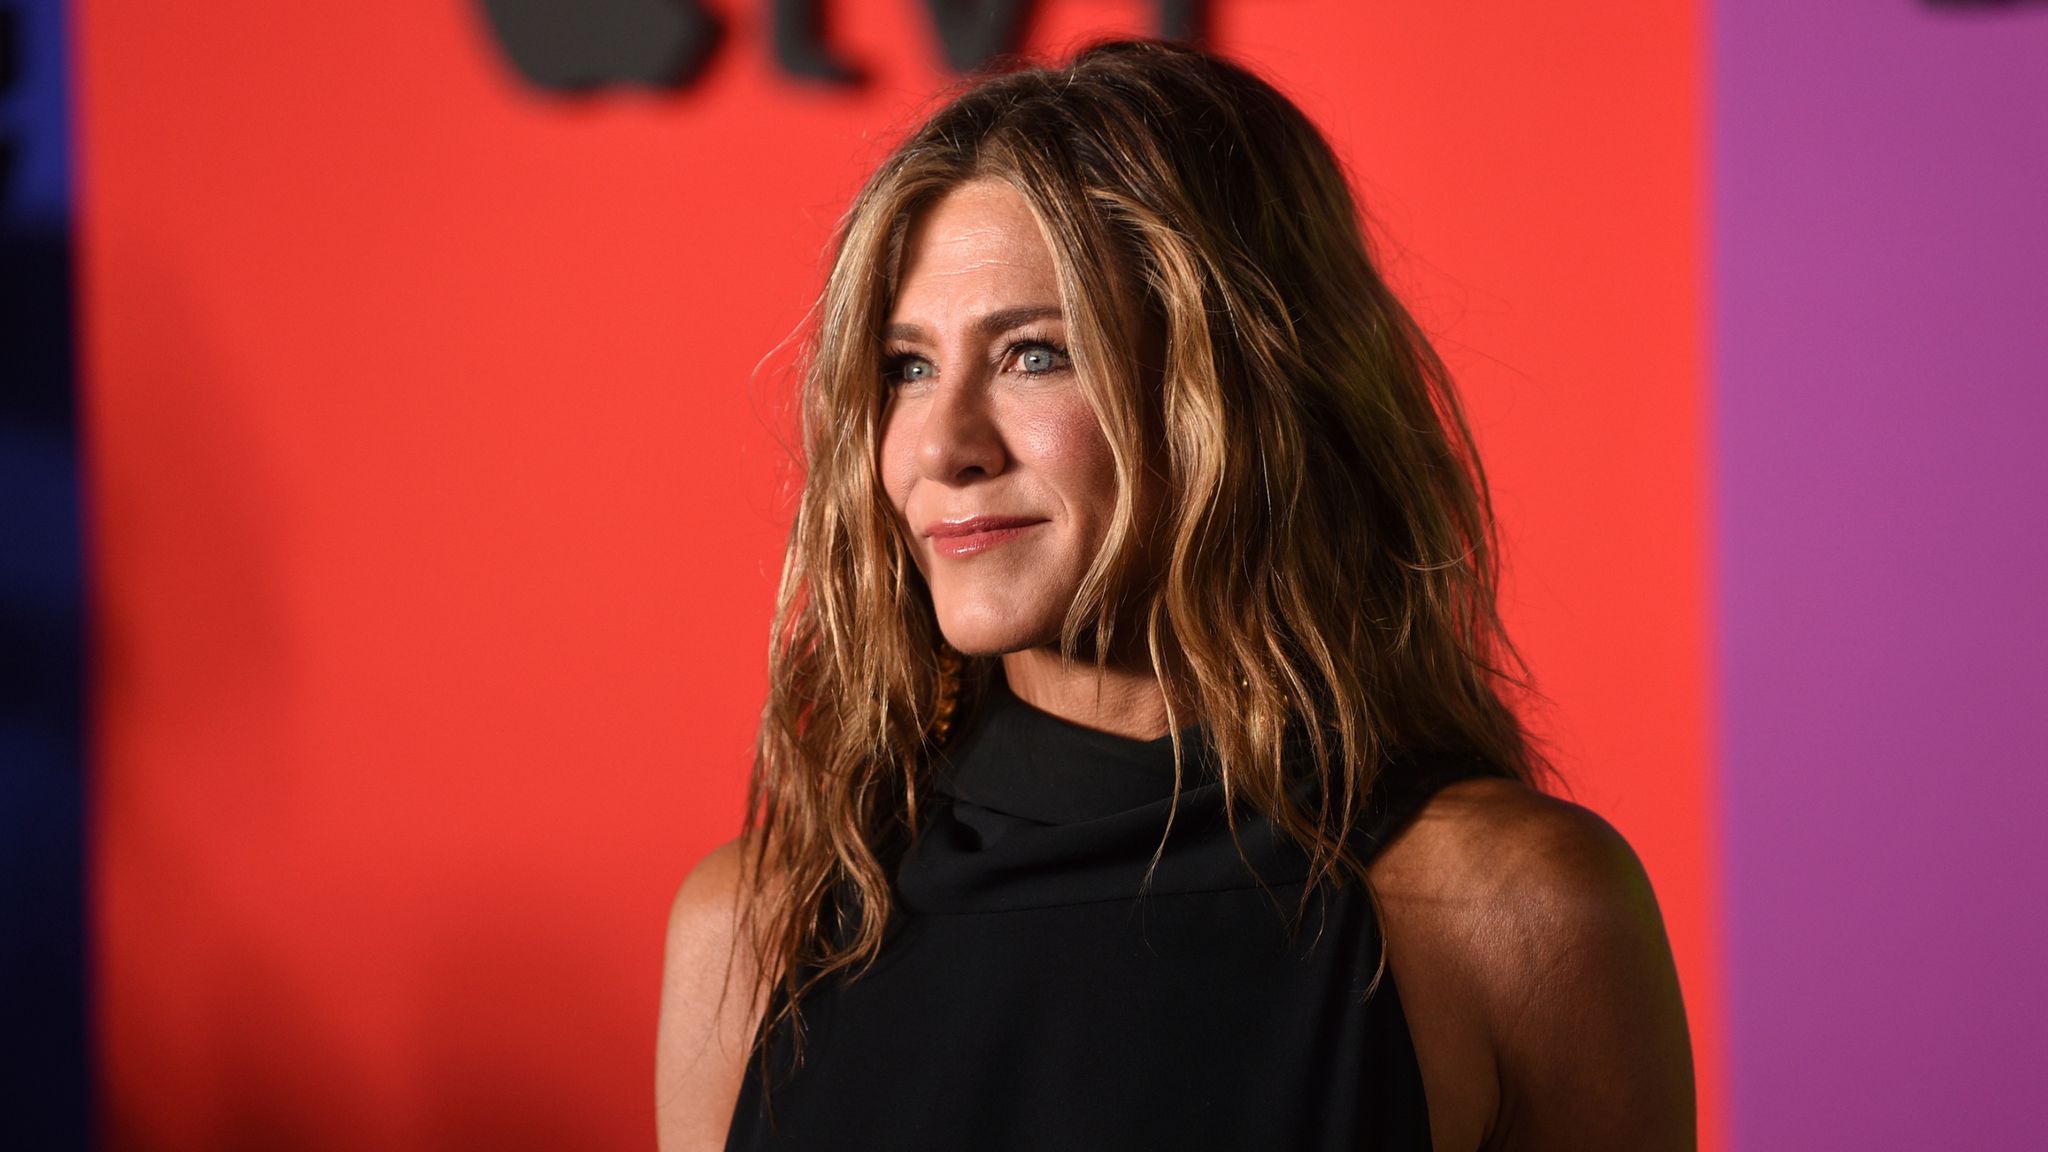 Jennifer Aniston's Off-Duty Look Is Very 'Friends